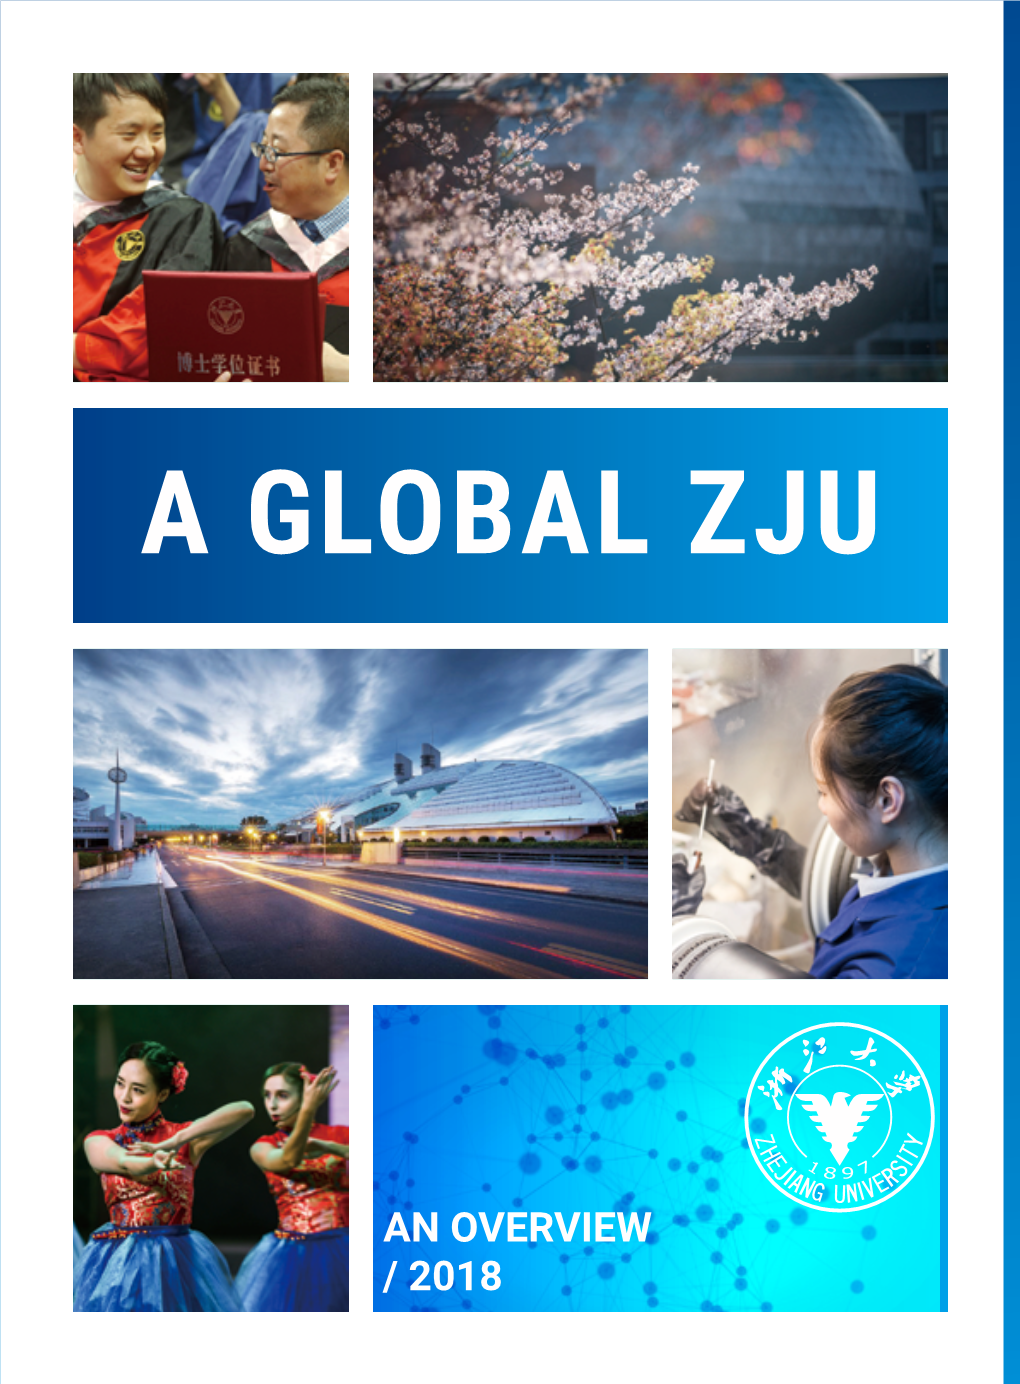 Zhejiang University (ZJU) Overview 201804 Web